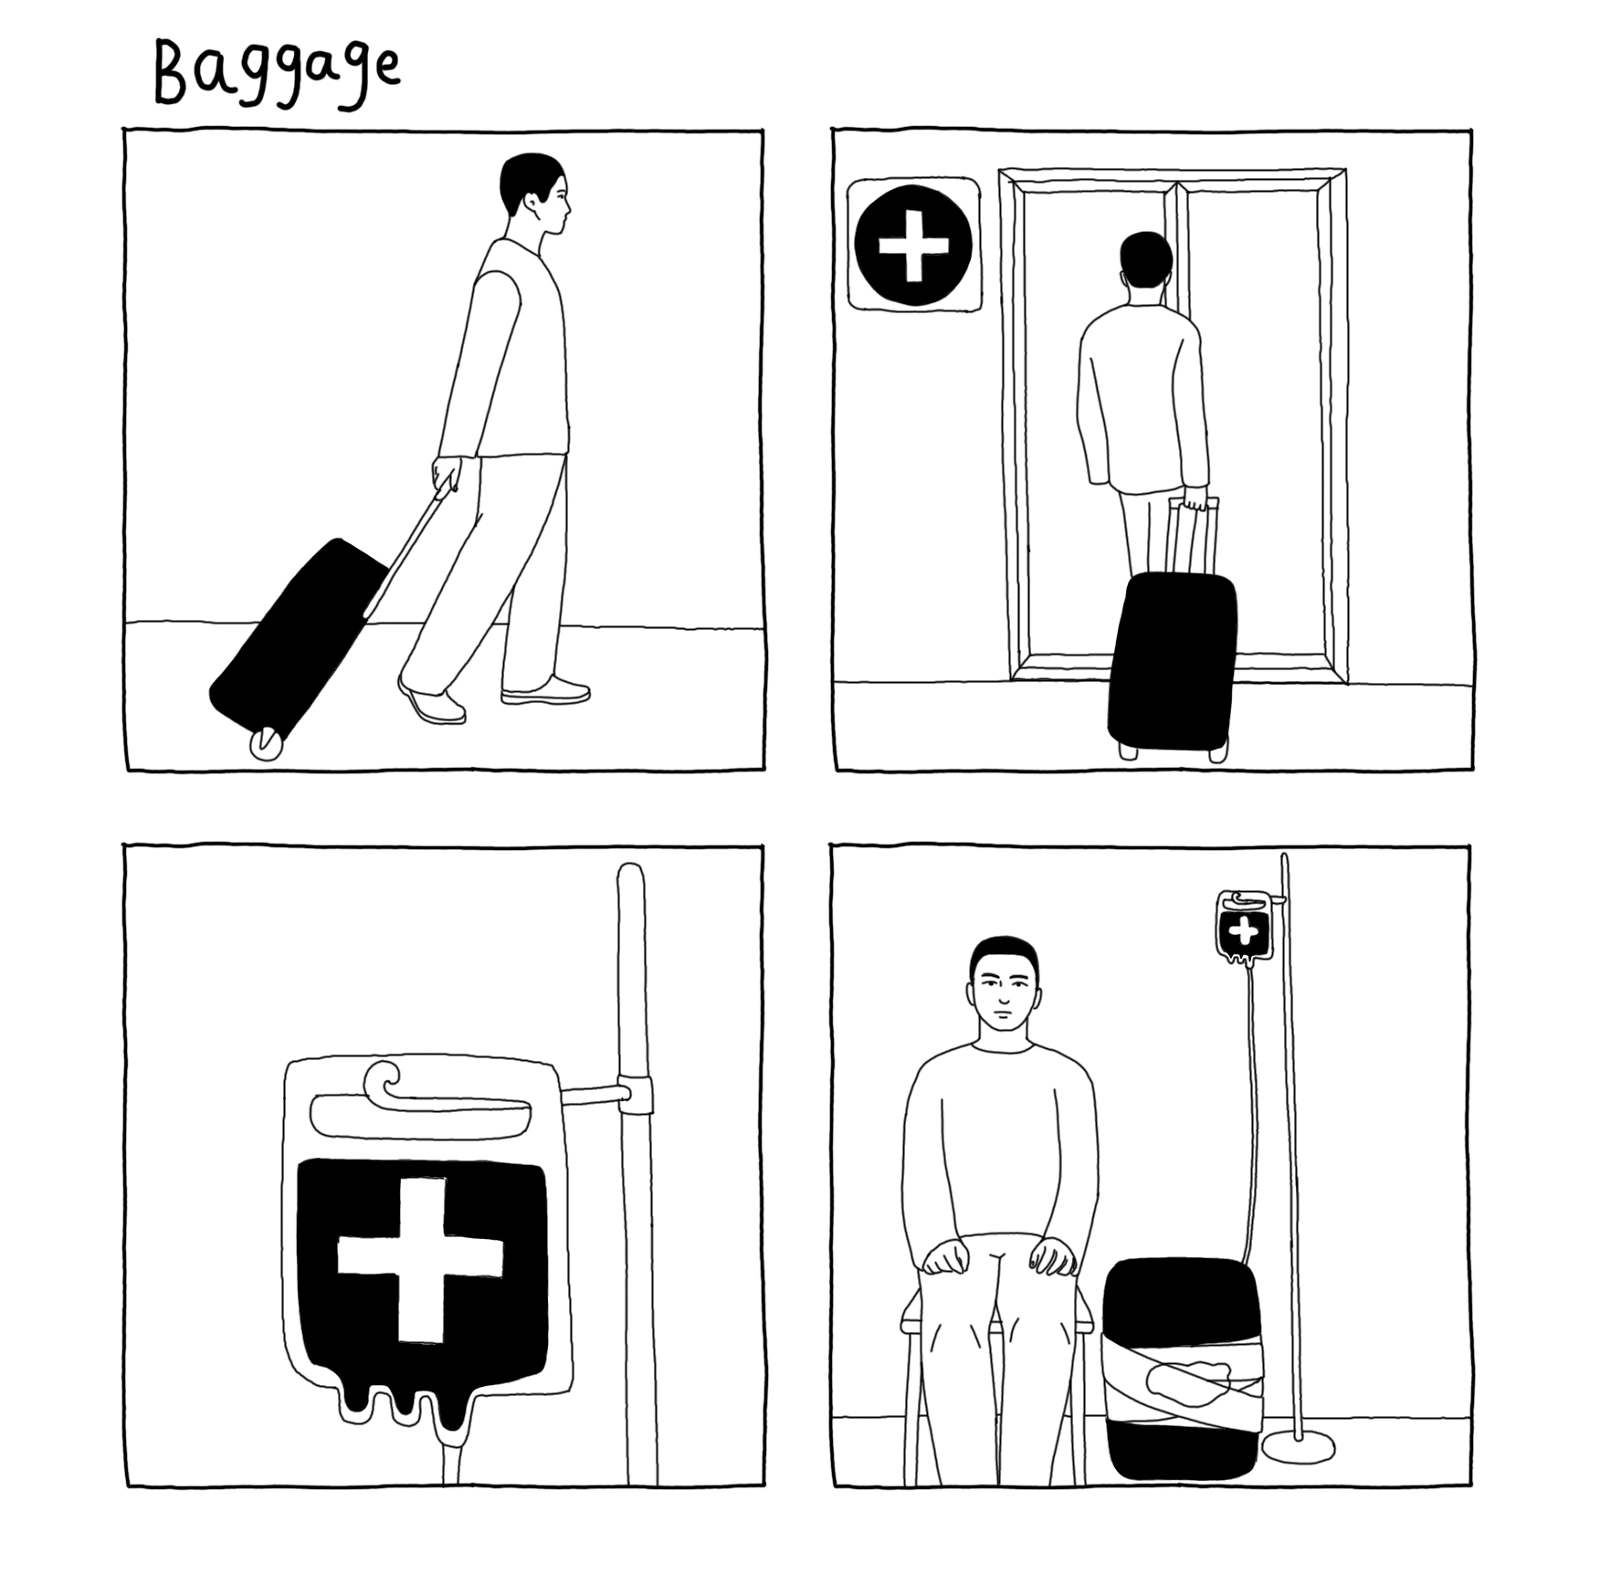 baggage_1600_c.jpg